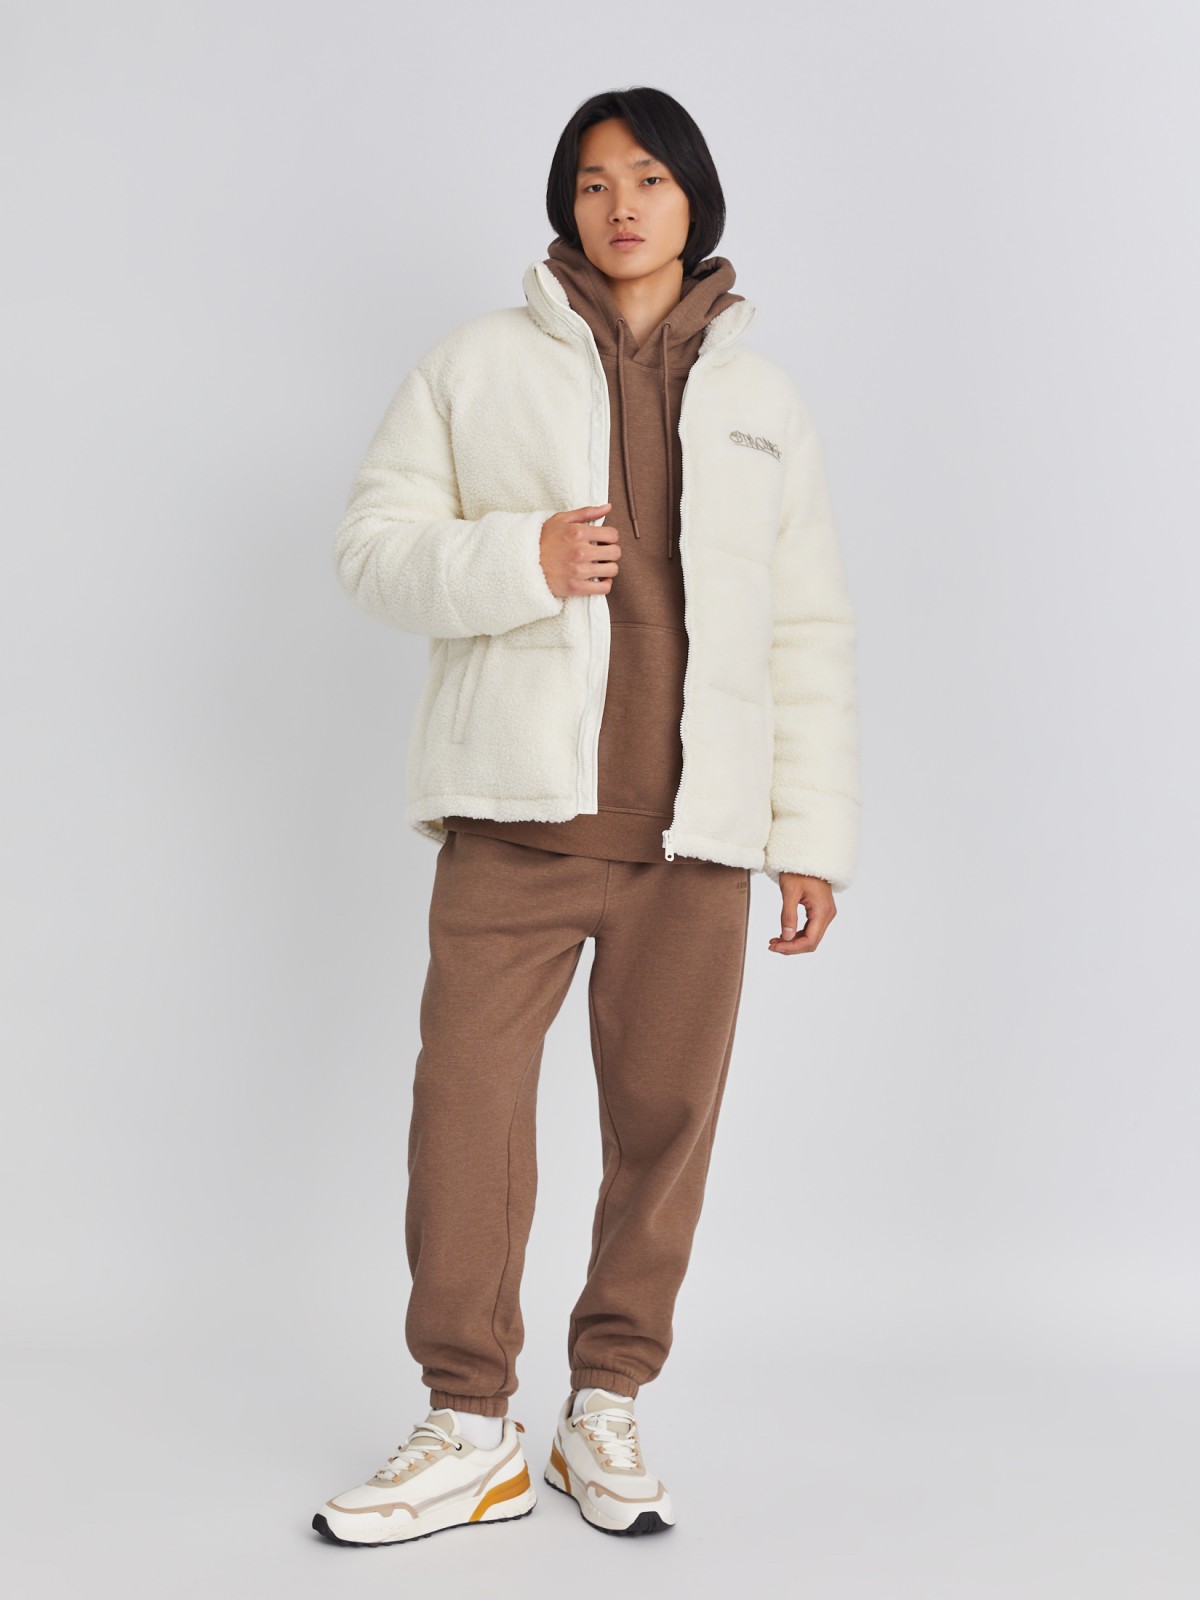 Тёплая куртка из экомеха с воротником-стойкой zolla 013425502024, цвет молоко, размер S/M - фото 2